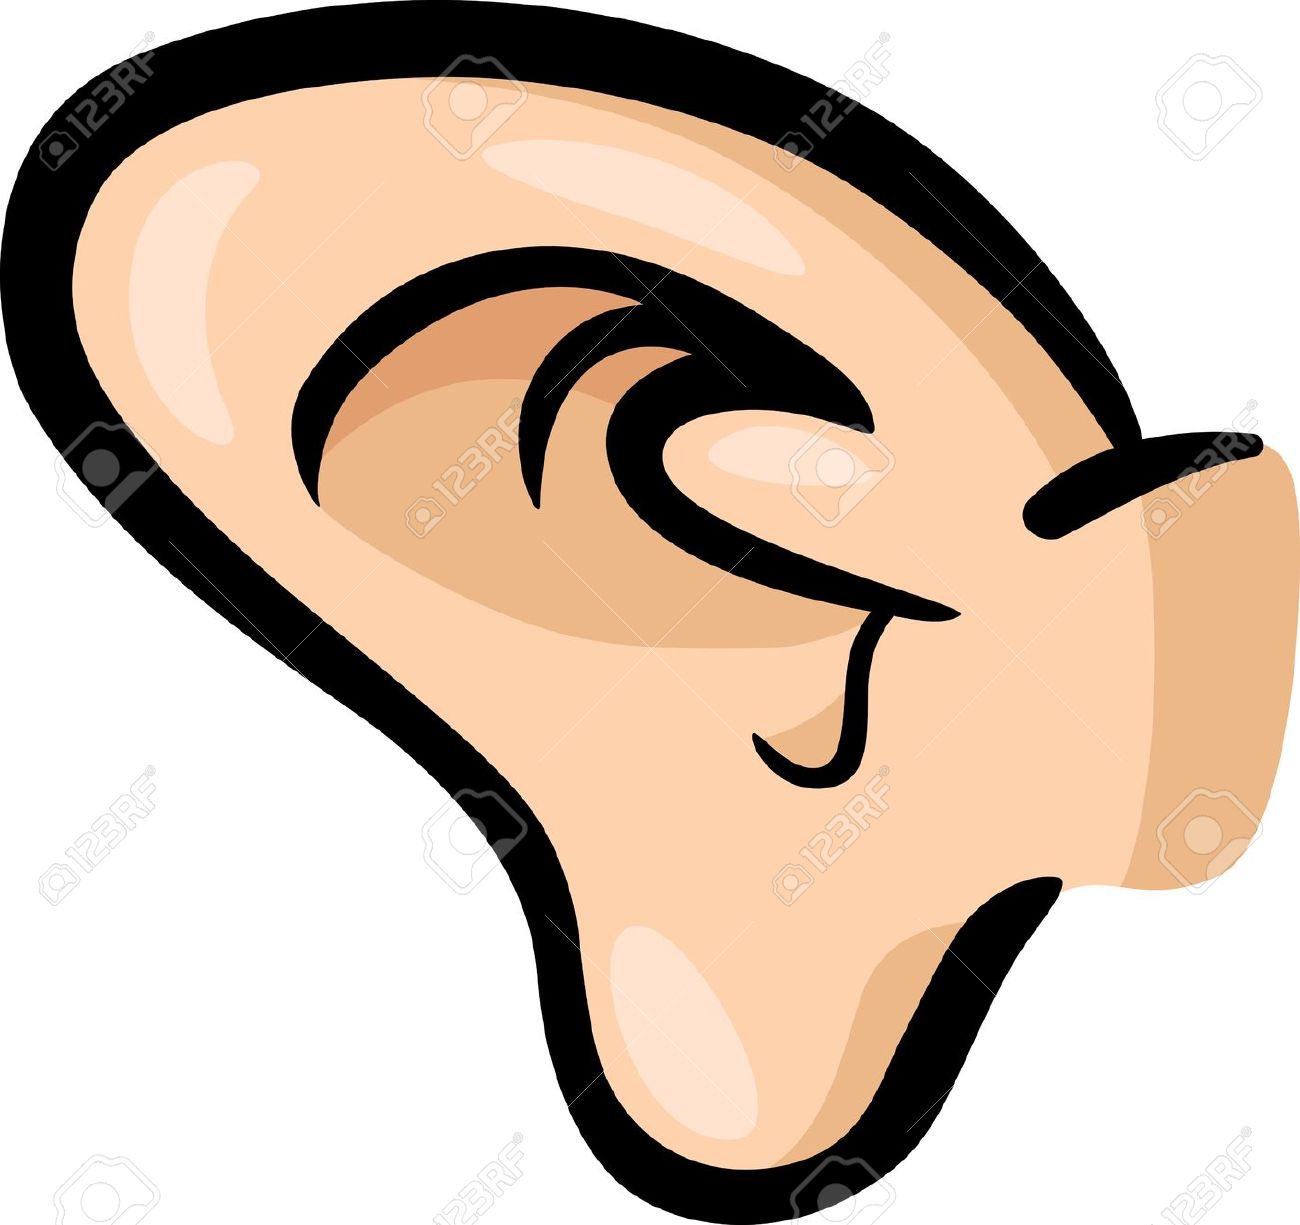 ear clipart large ear